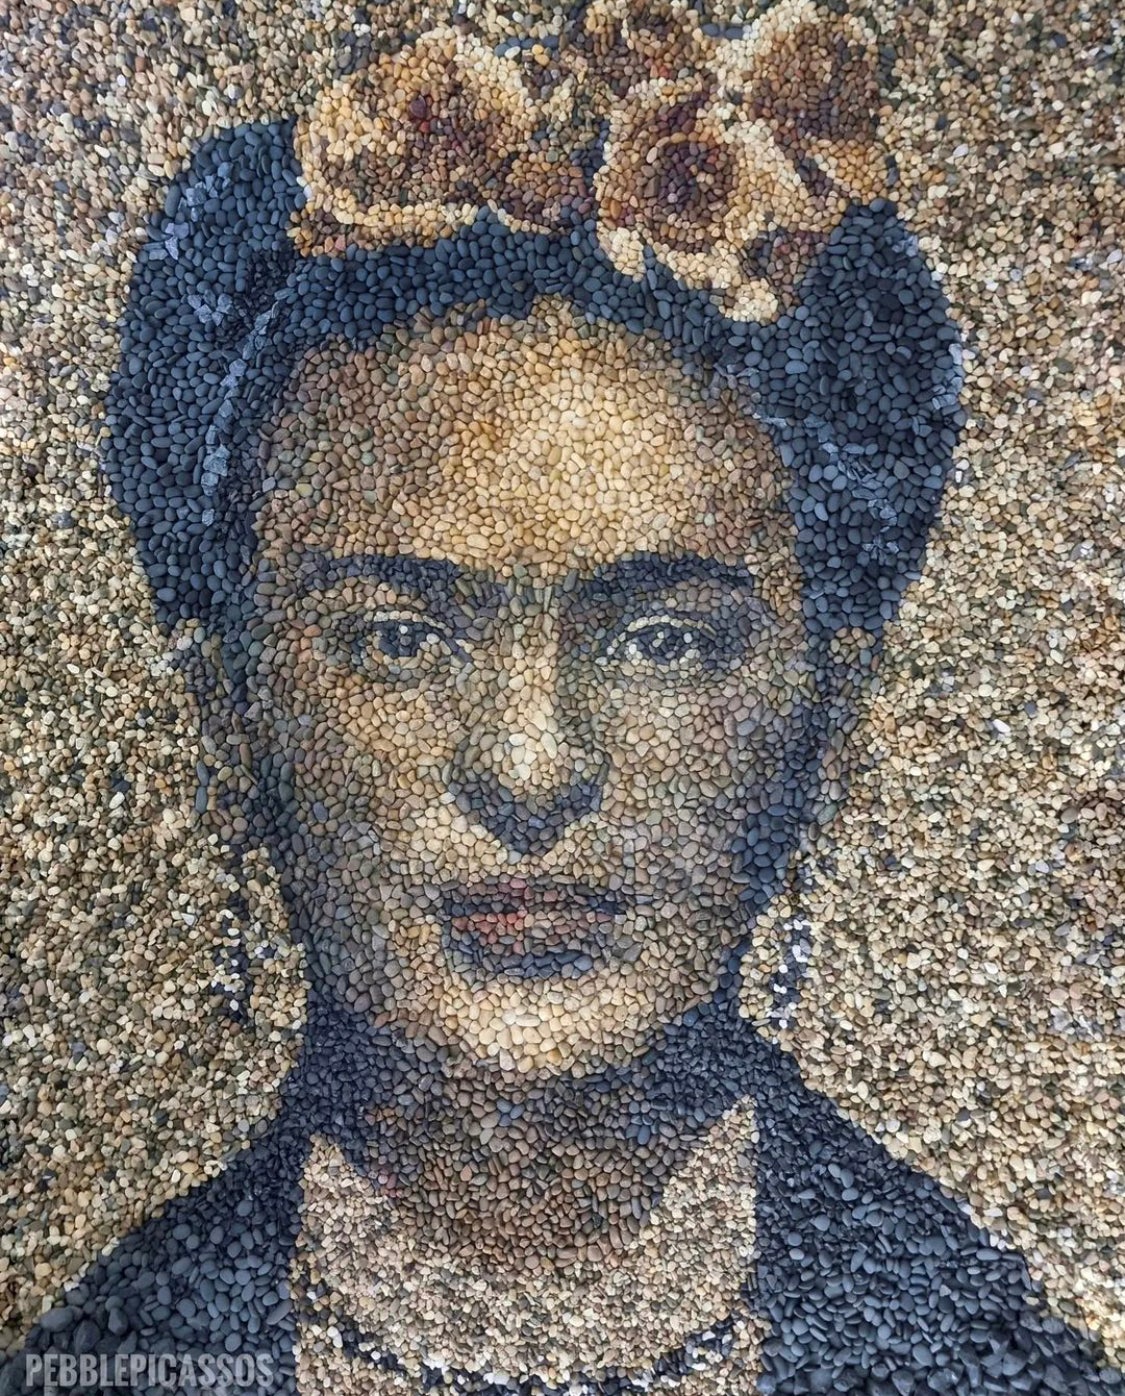 ฟรีดา คาห์โล (Frida Kahlo)